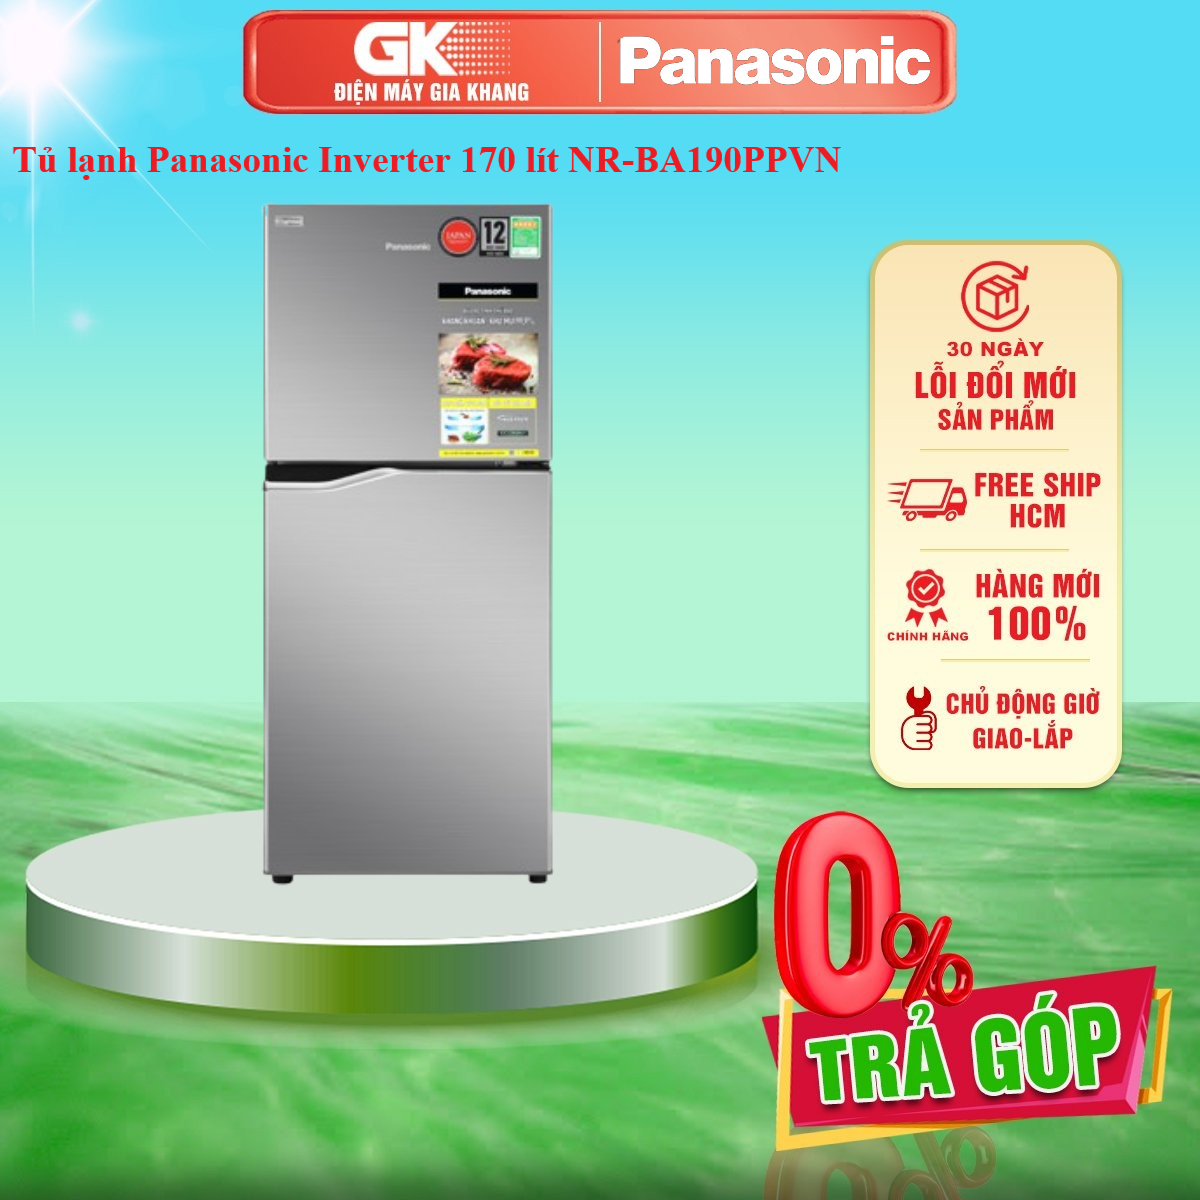 Tủ lạnh Panasonic Inverter 170 lít NR-BA190PPVN - Miễn phí vận chuyển HCM - GIAO TOÀN QUỐC - FREESHIP HCM